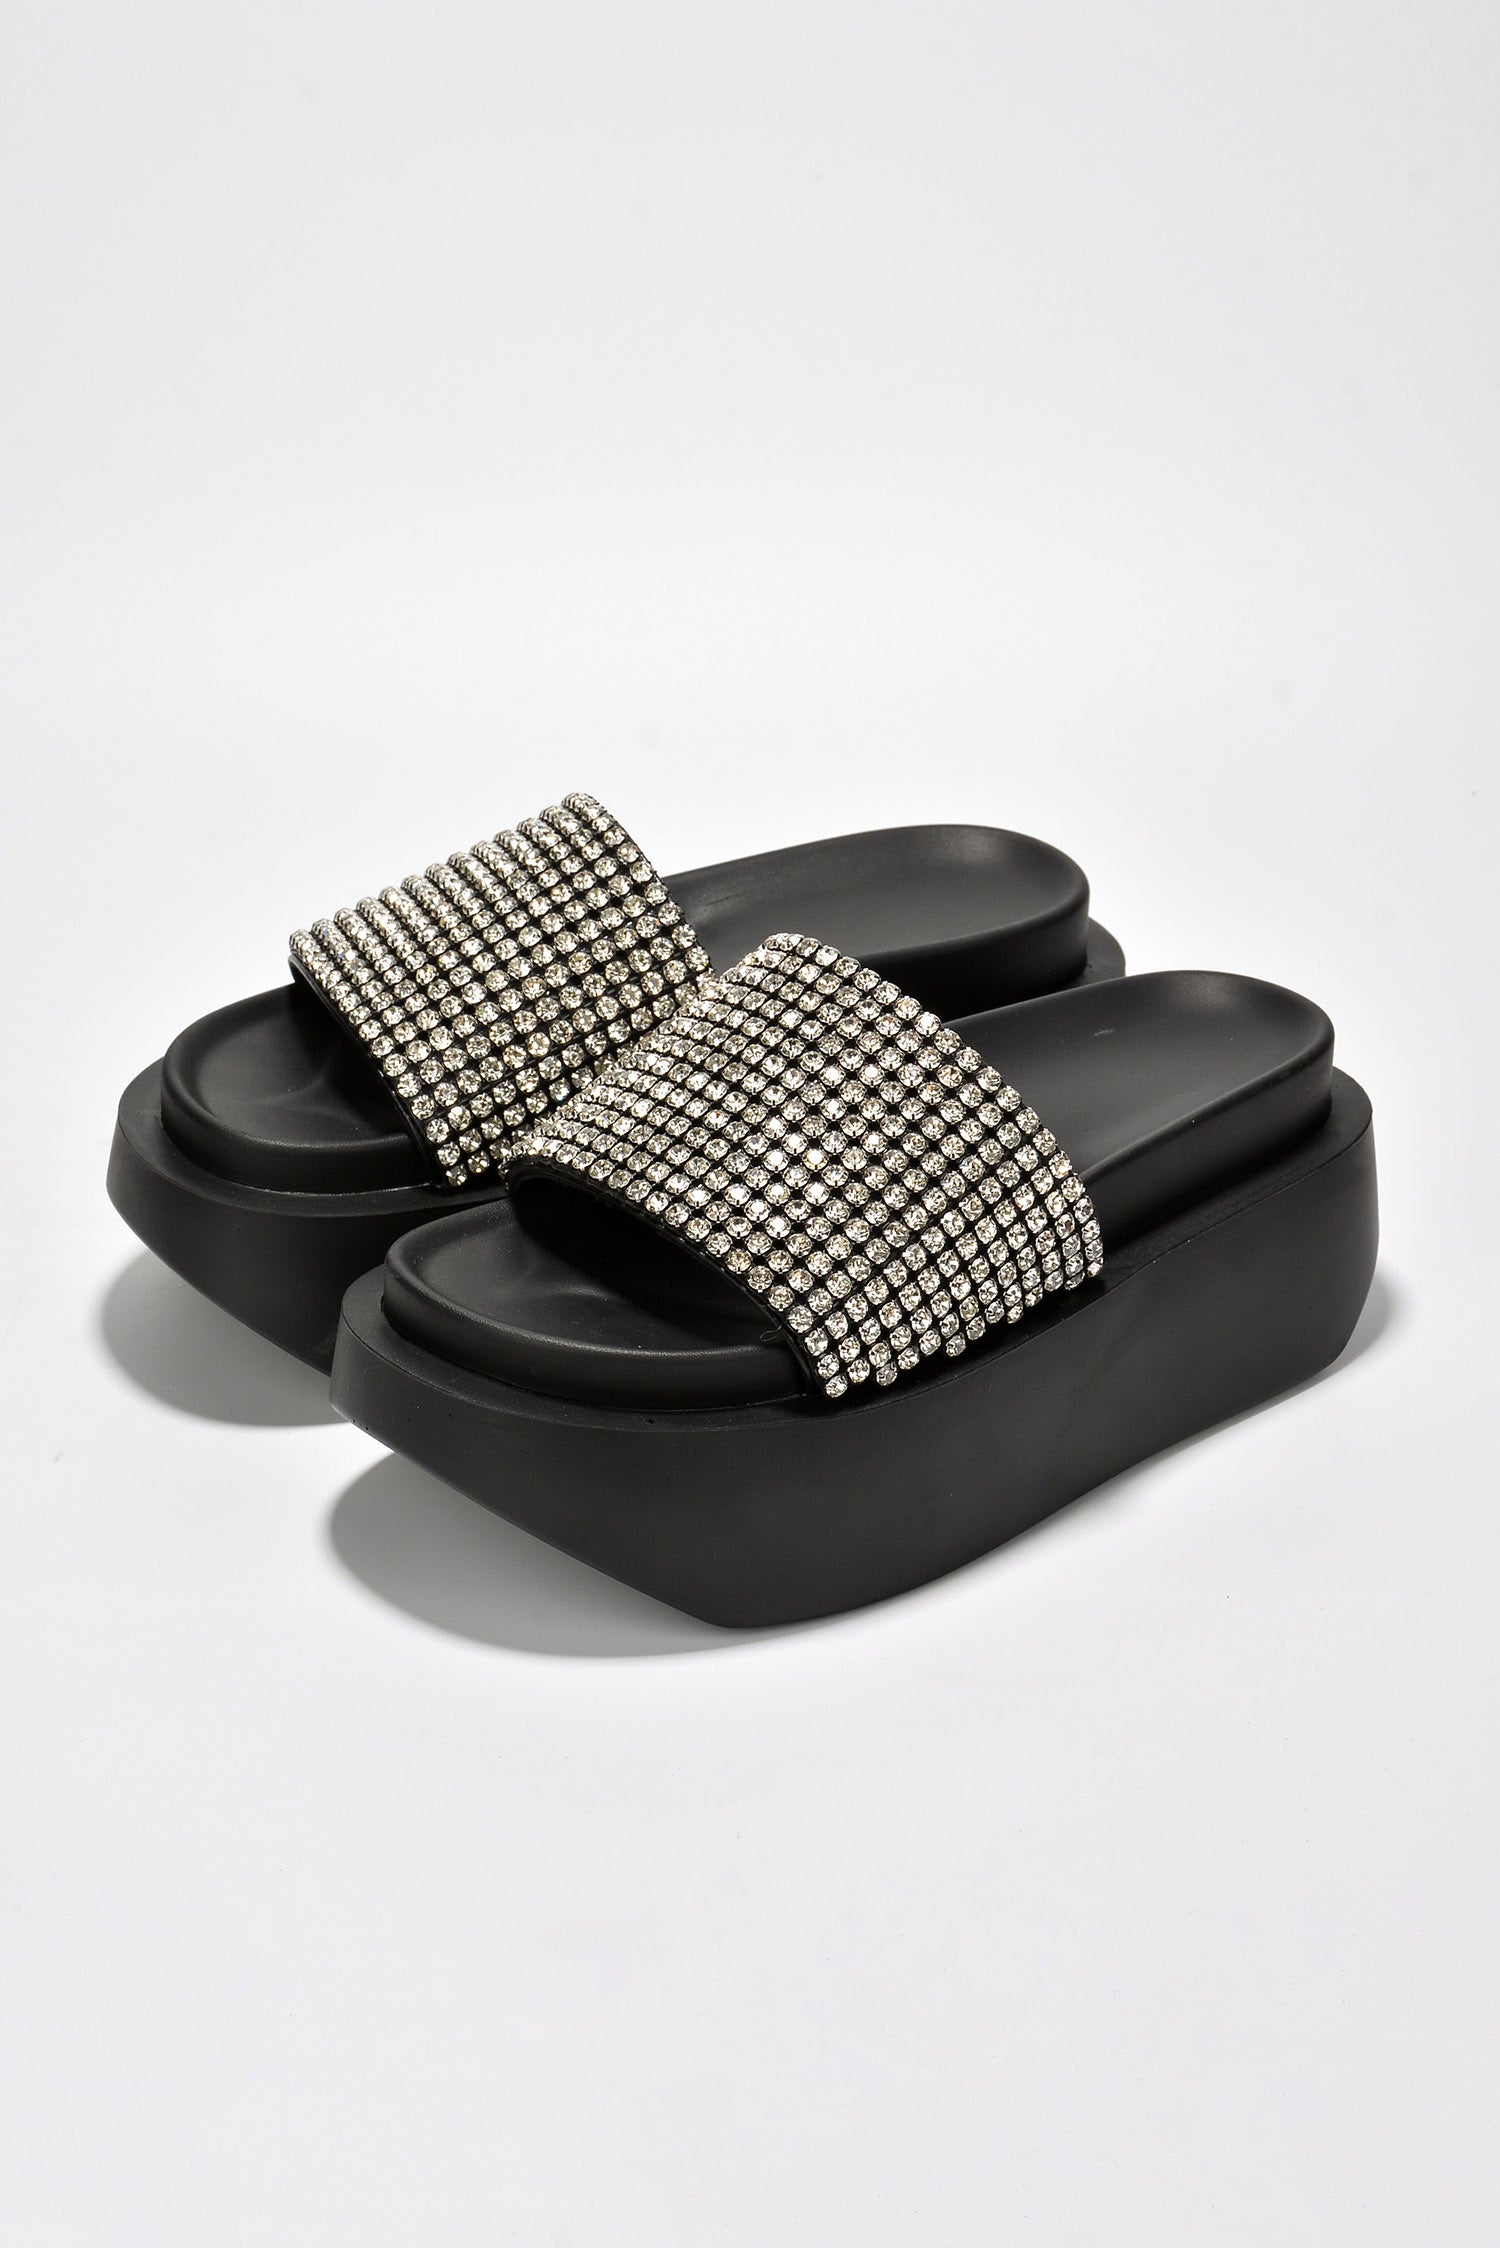 UrbanOG - Bisbee Luxurious Rhinestone Platform Sandals - SANDALS